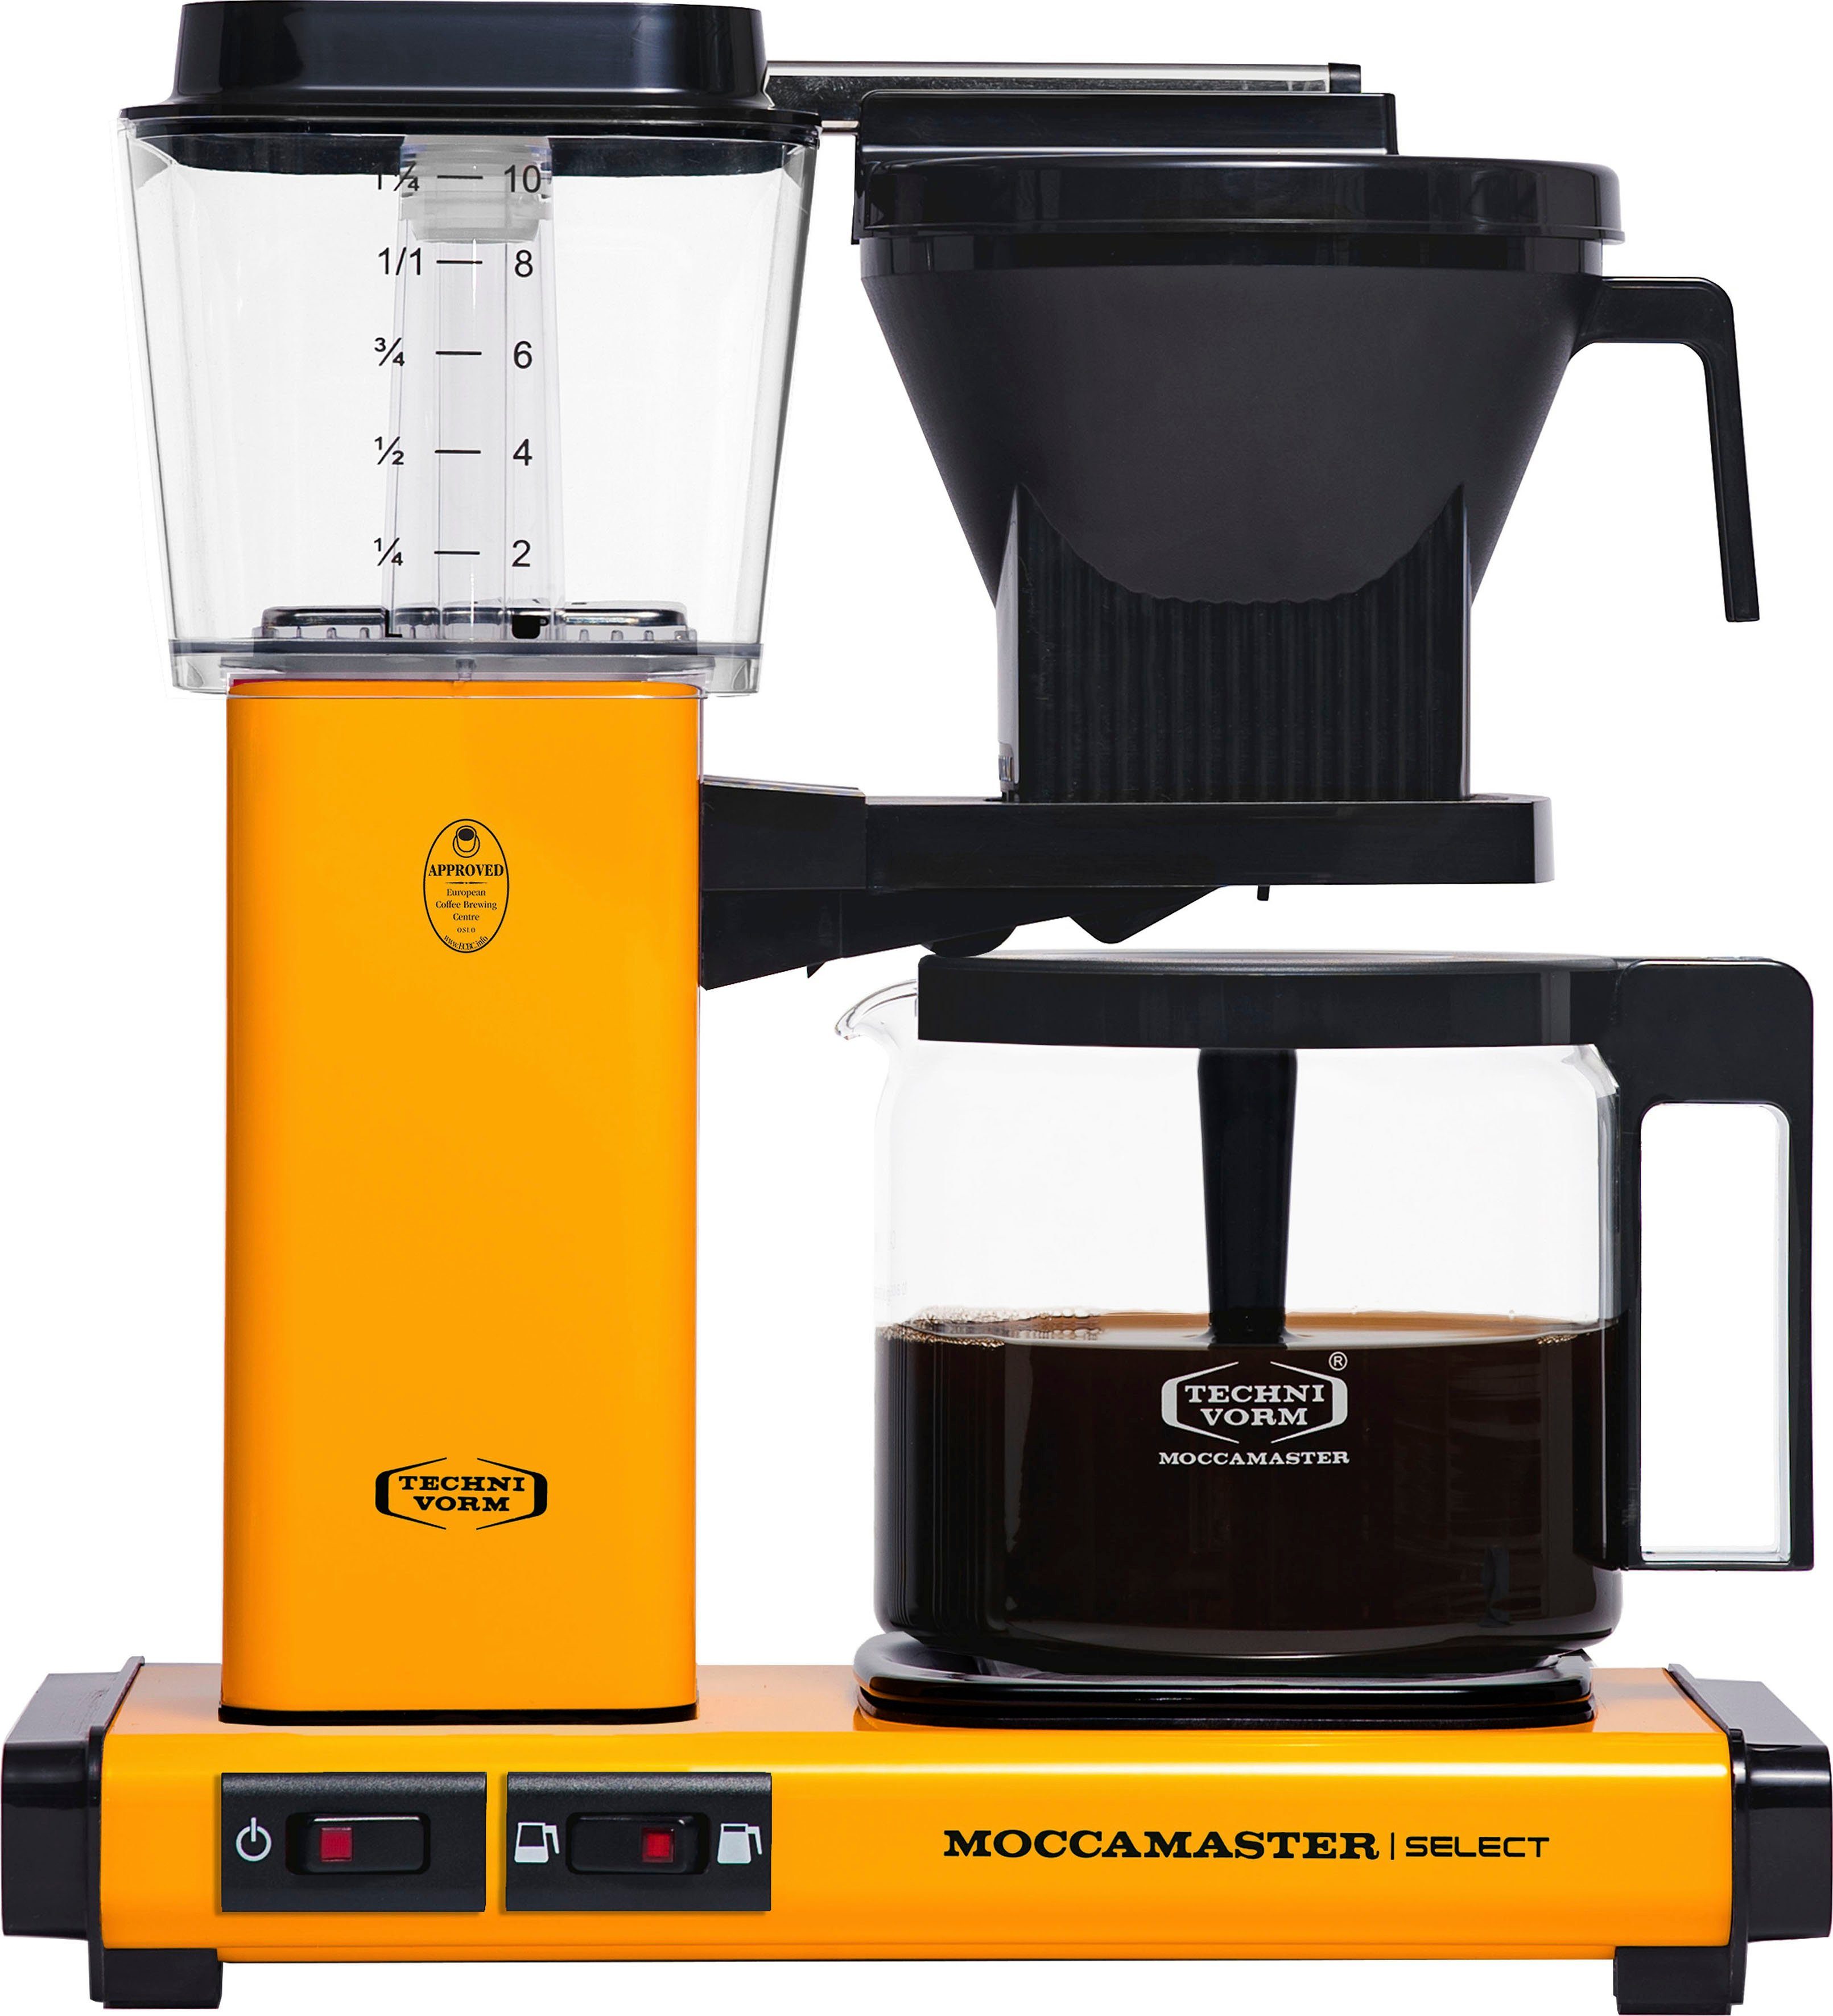 Filterkaffeemaschine Select Moccamaster KBG Kaffeekanne, Papierfilter 1x4 yellow 1,25l pepper,